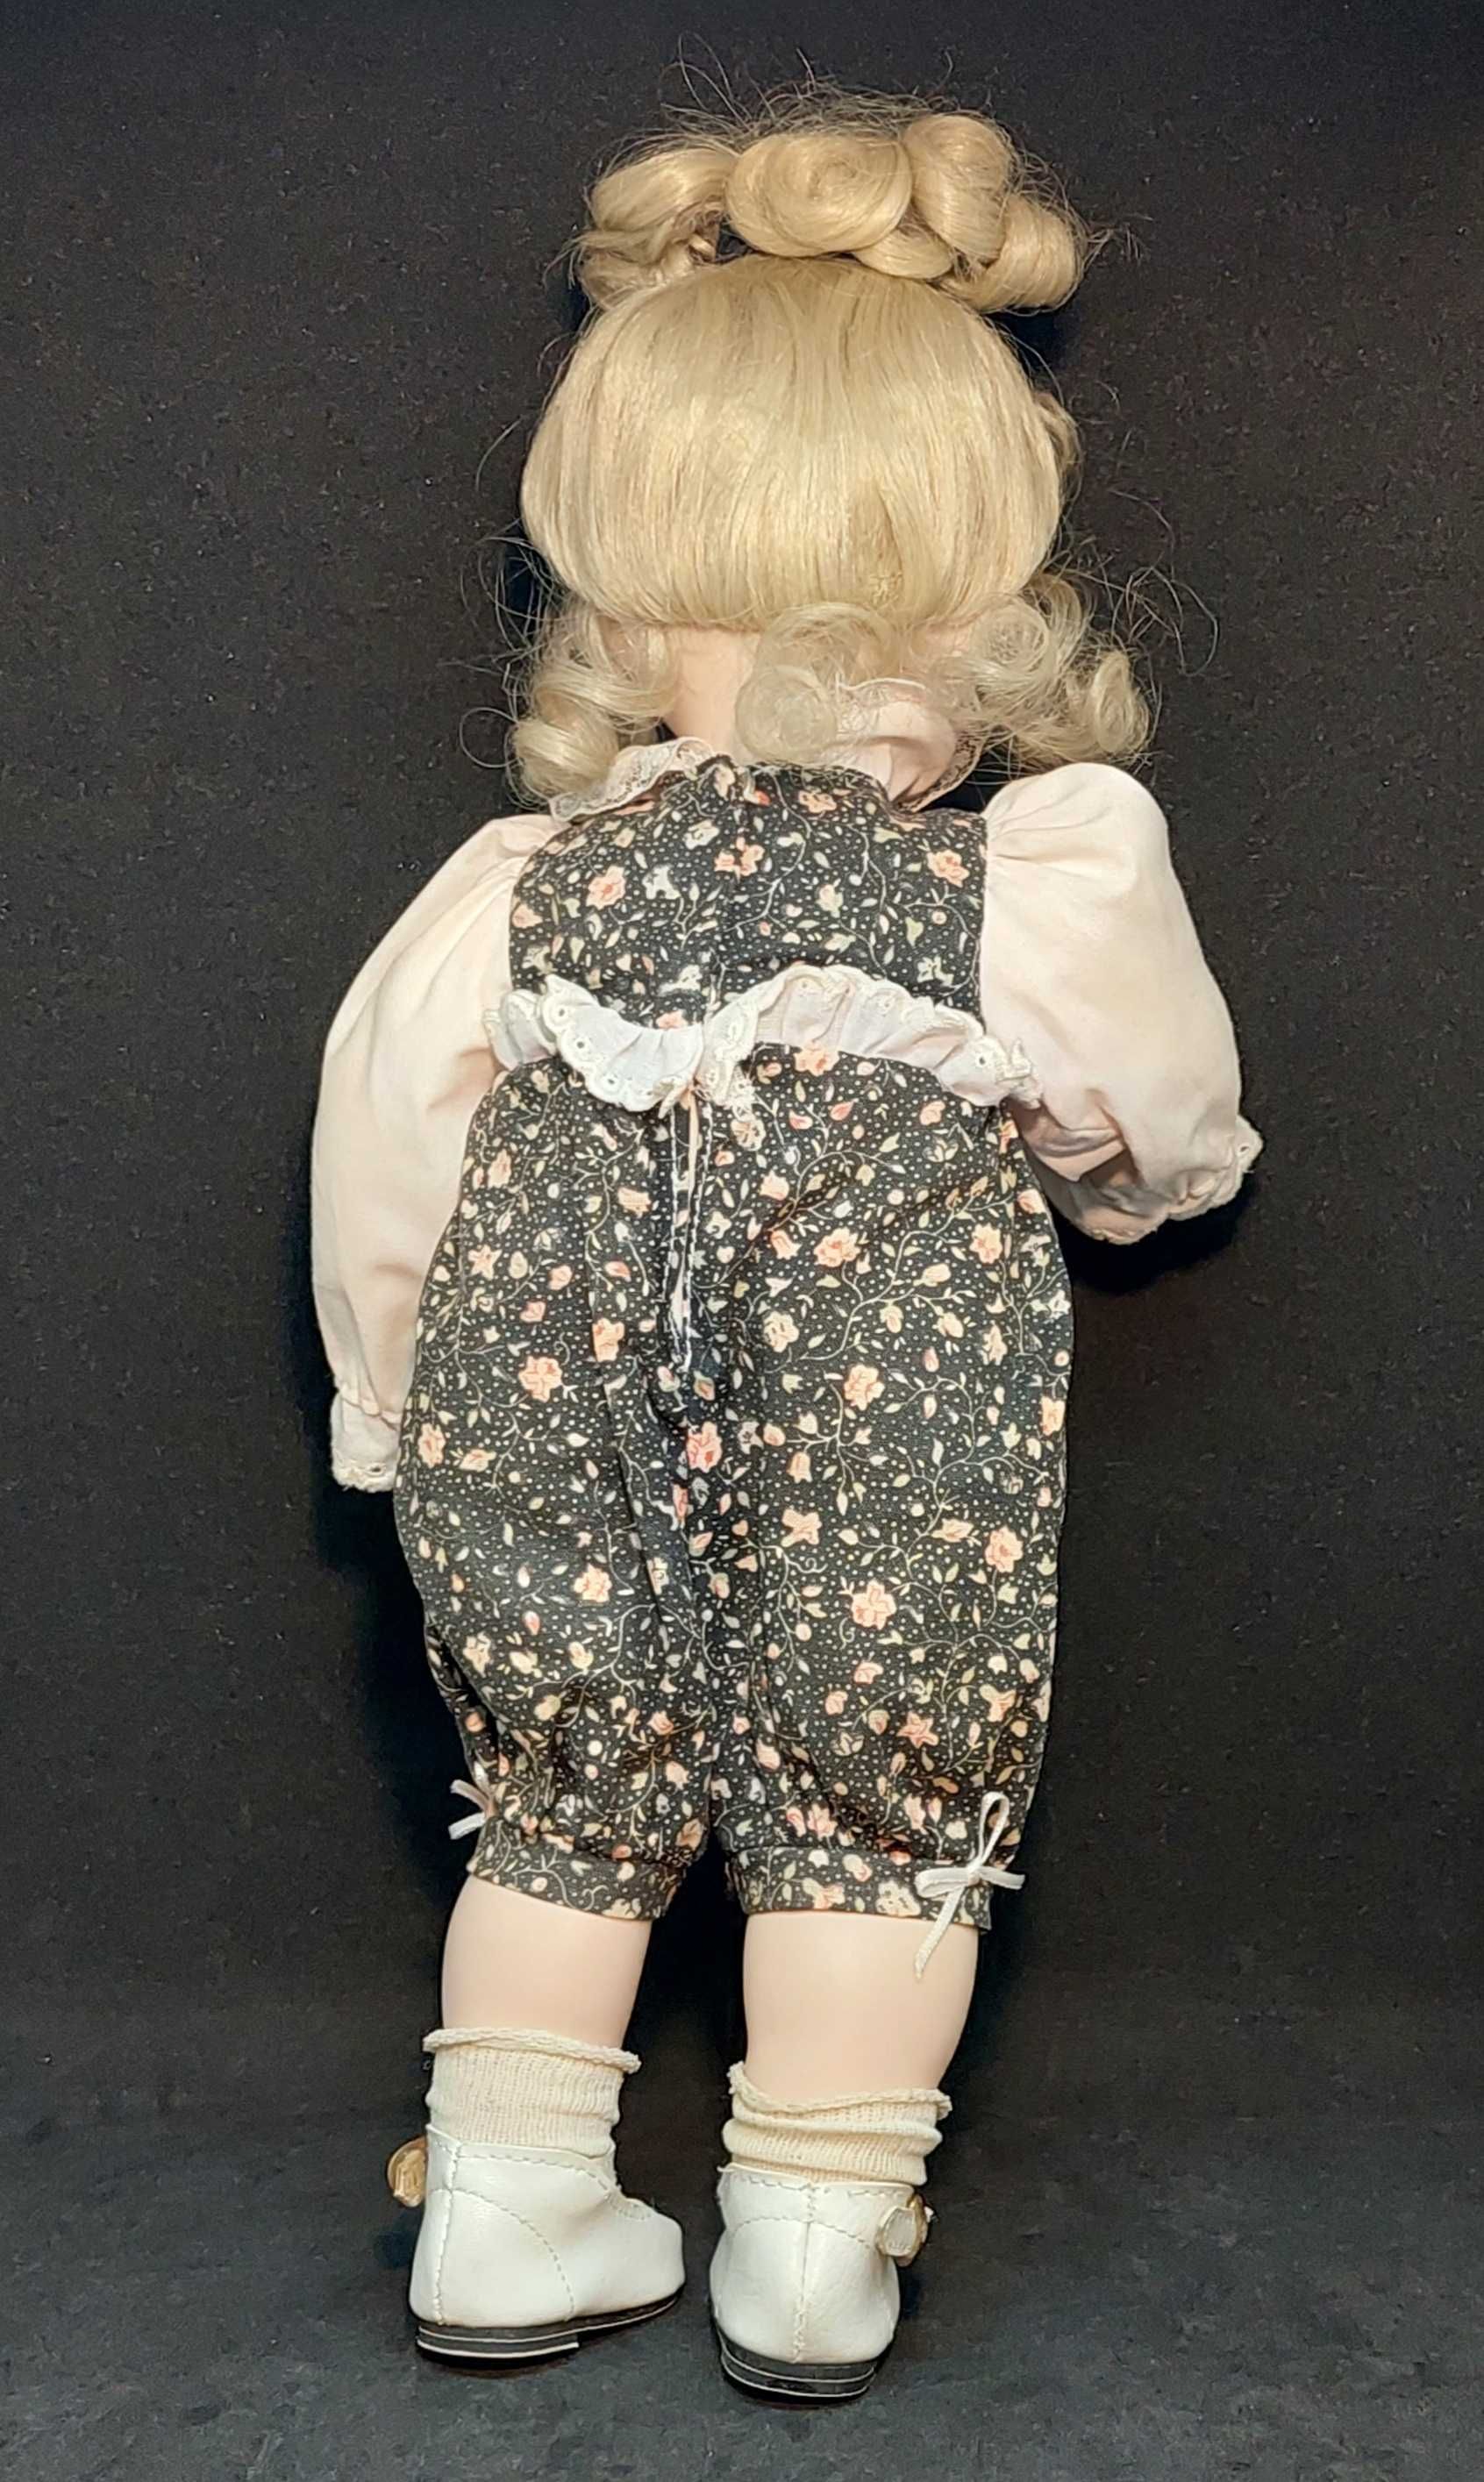 РЕДКАЯ винтажная фарфоровая кукла США 1991 JAN GOODYEAR 35 см. клеймо